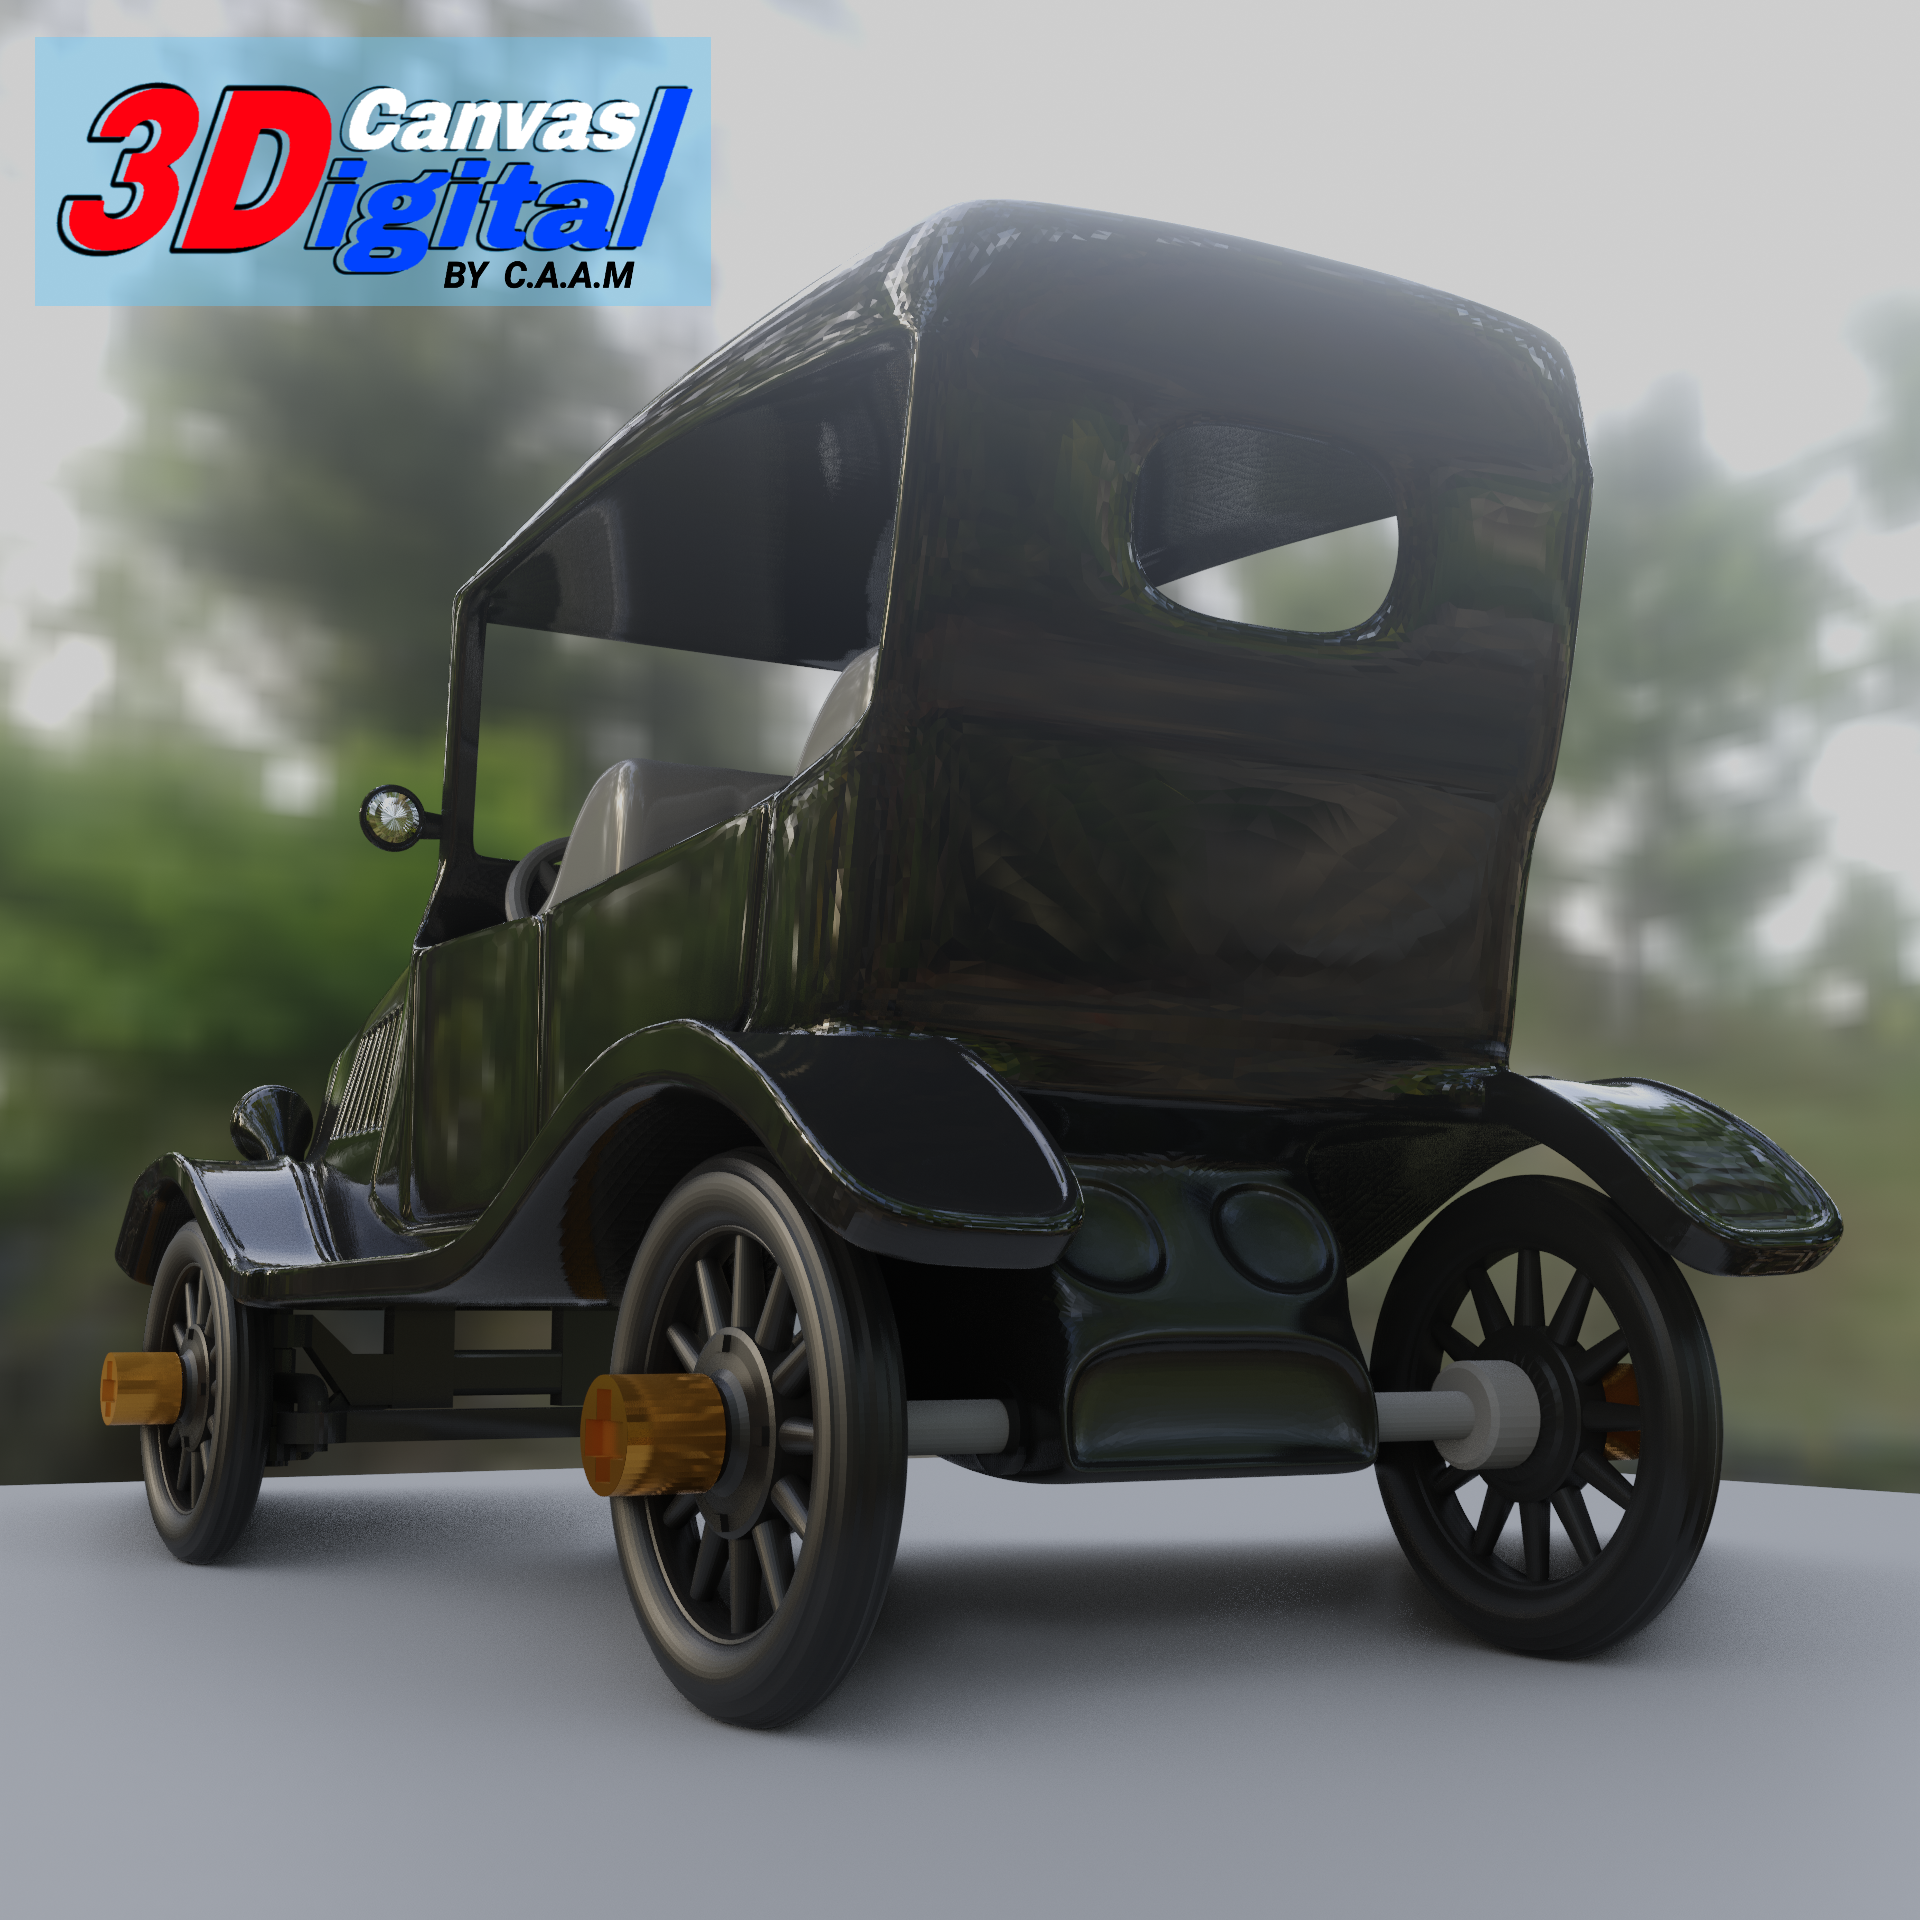 gtbgbgb.png Télécharger fichier Voiture classique pour l'impression 3D • Objet pour imprimante 3D, Canvas3Digital